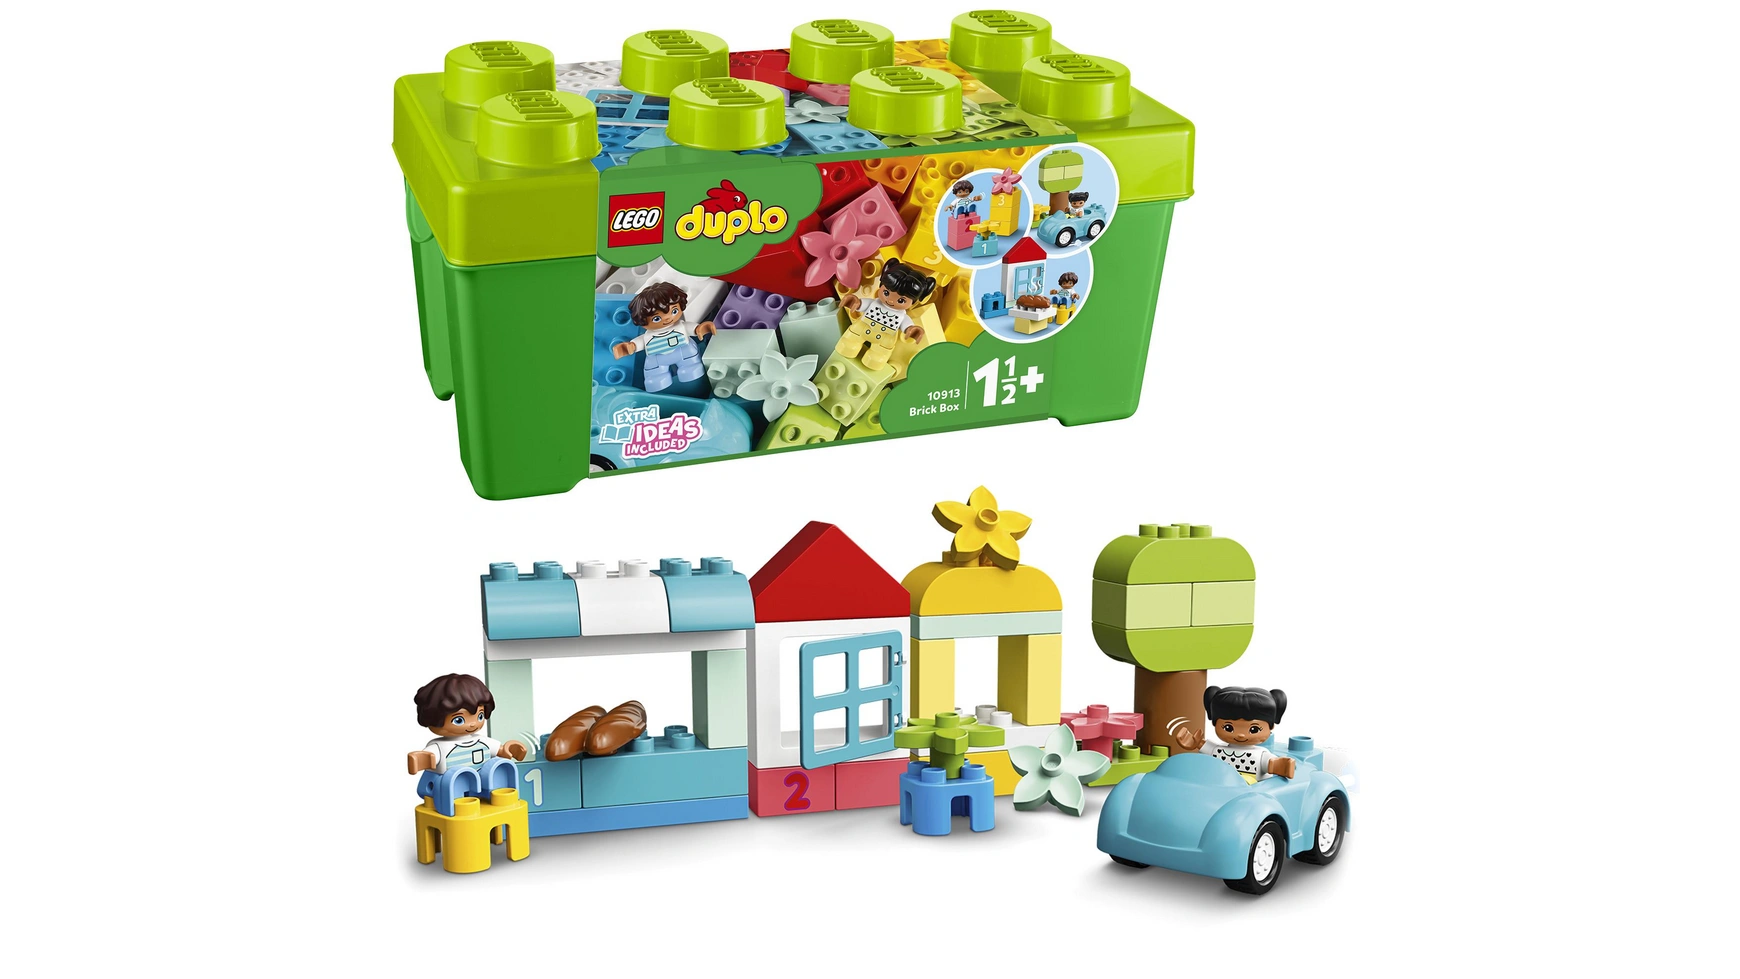 Lego DUPLO Classic Кирпичная коробка, креативная шкатулка, игрушка от 1,5 лет lego duplo моя первая увлекательная развивающая игрушка для сборки для детей от 1 5 лет и старше